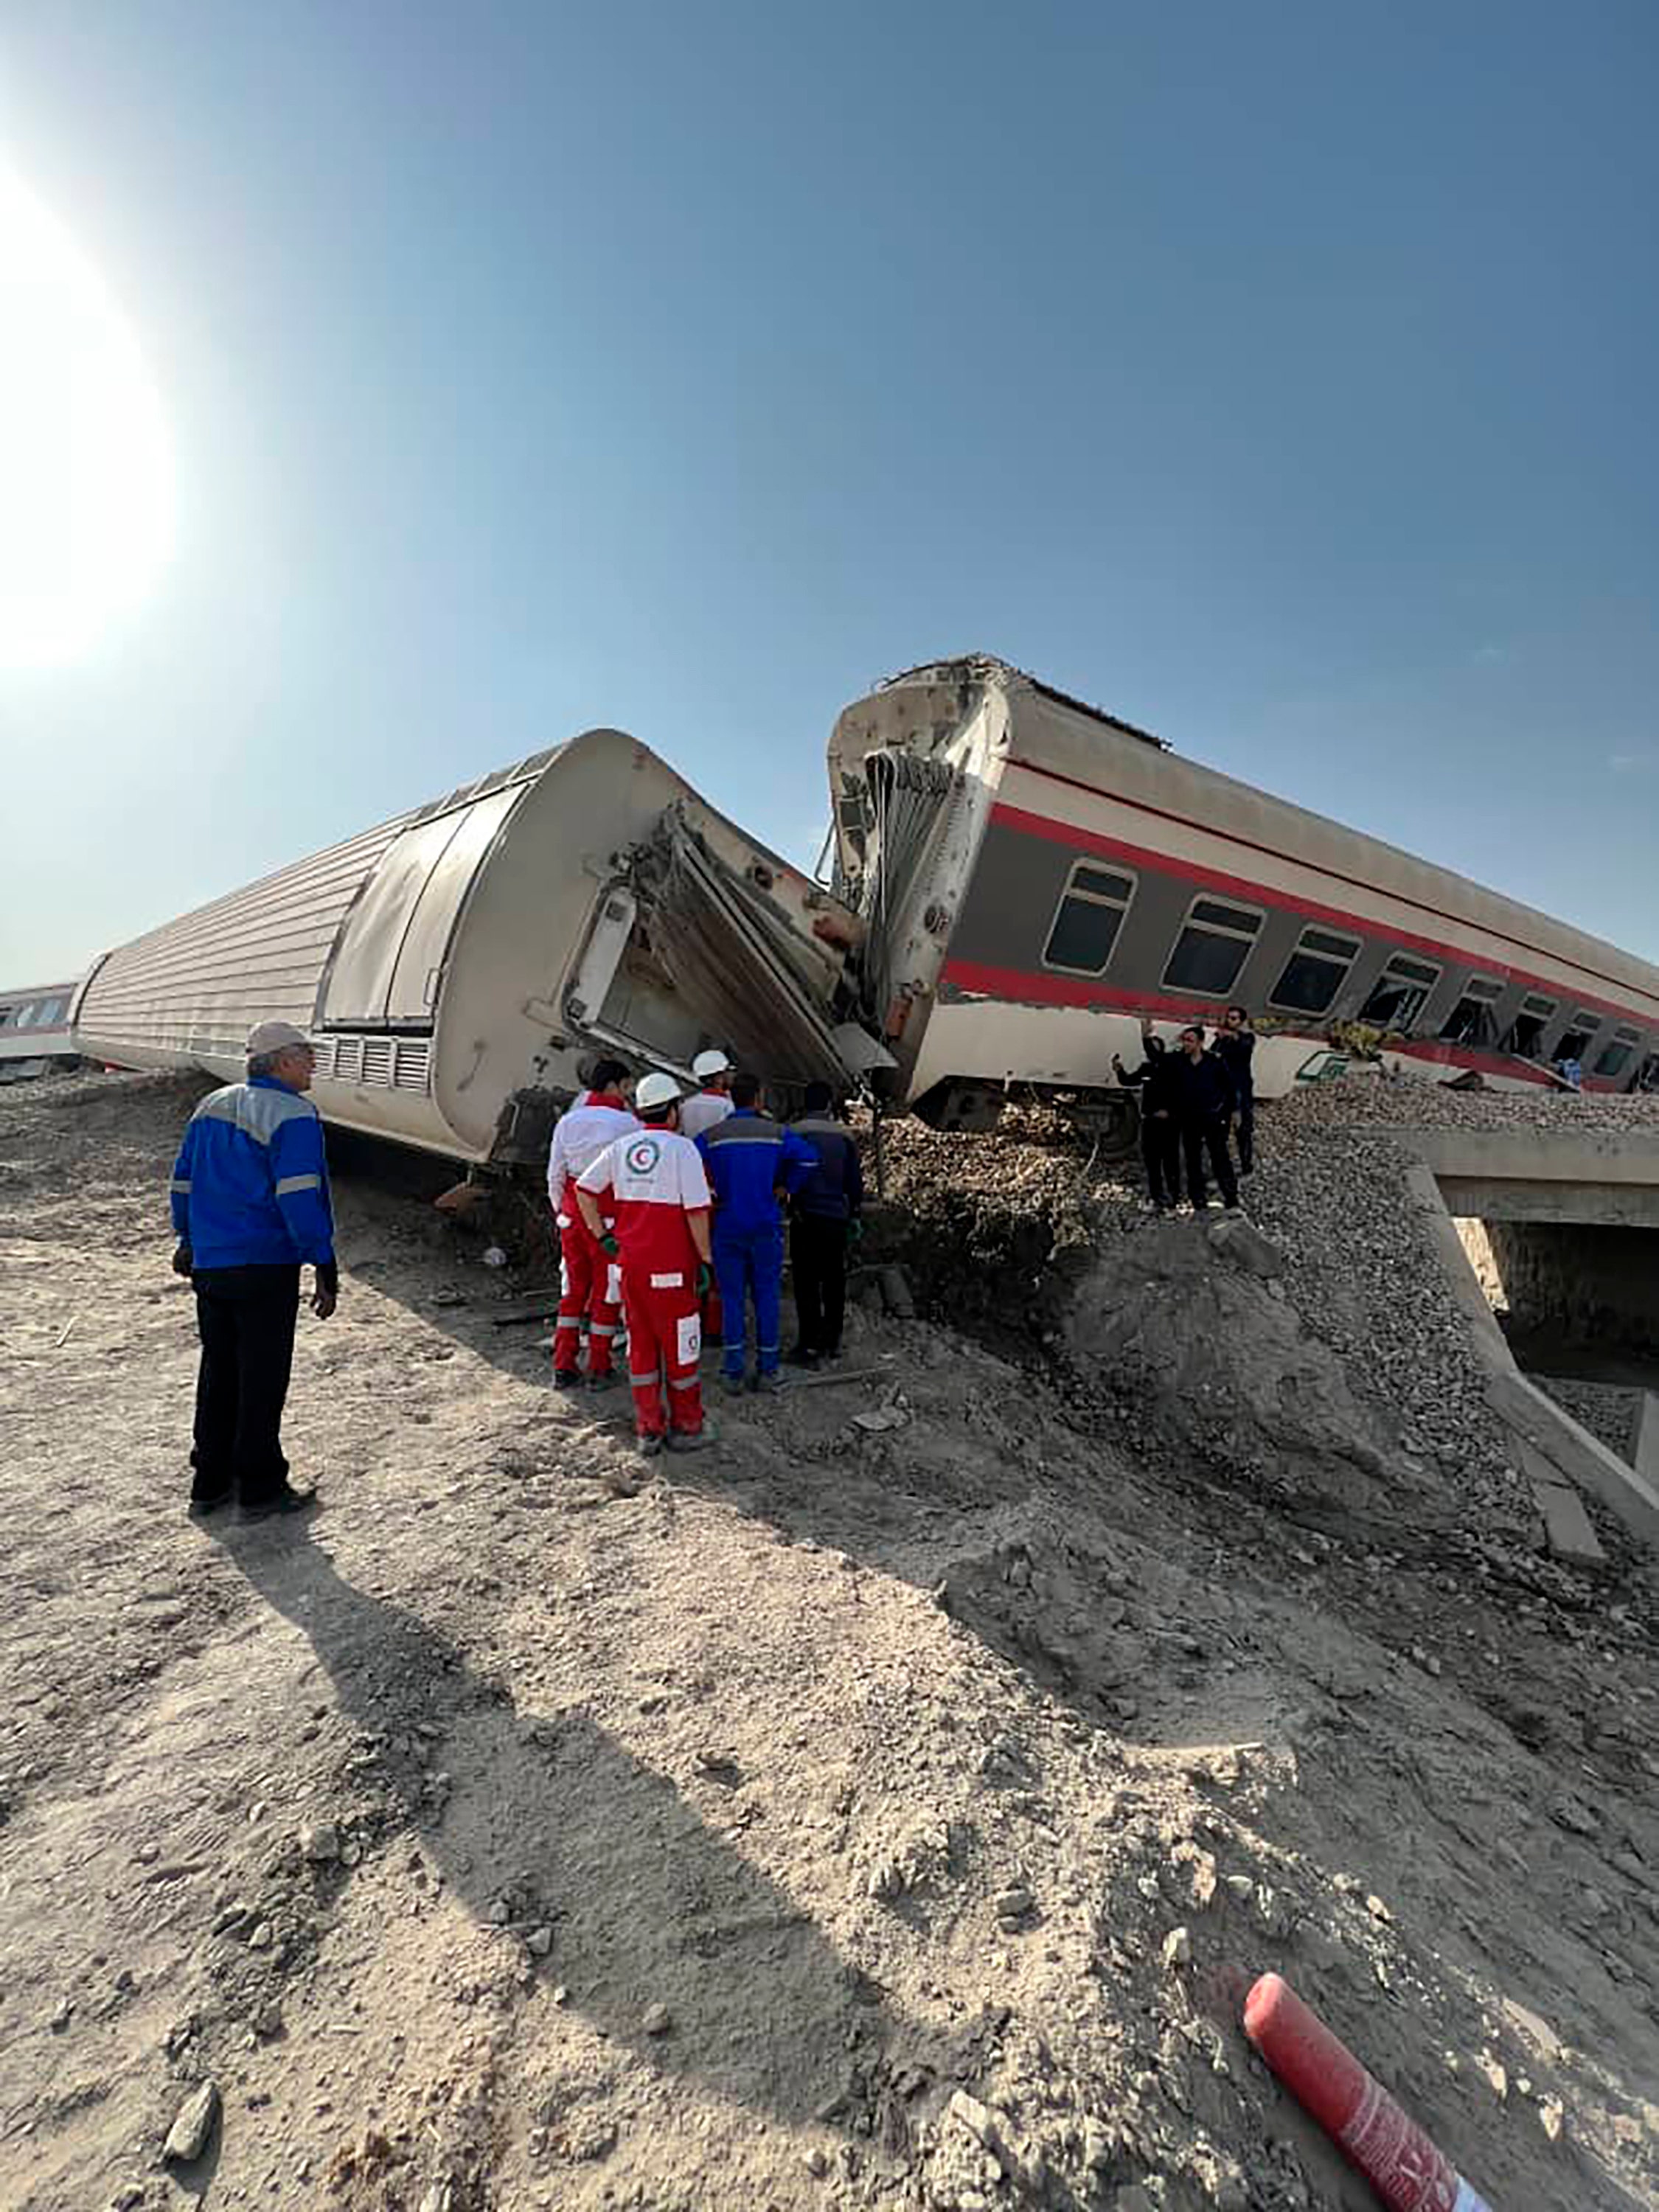 Iran train derailment: At least 17 people killed, 50 others injured